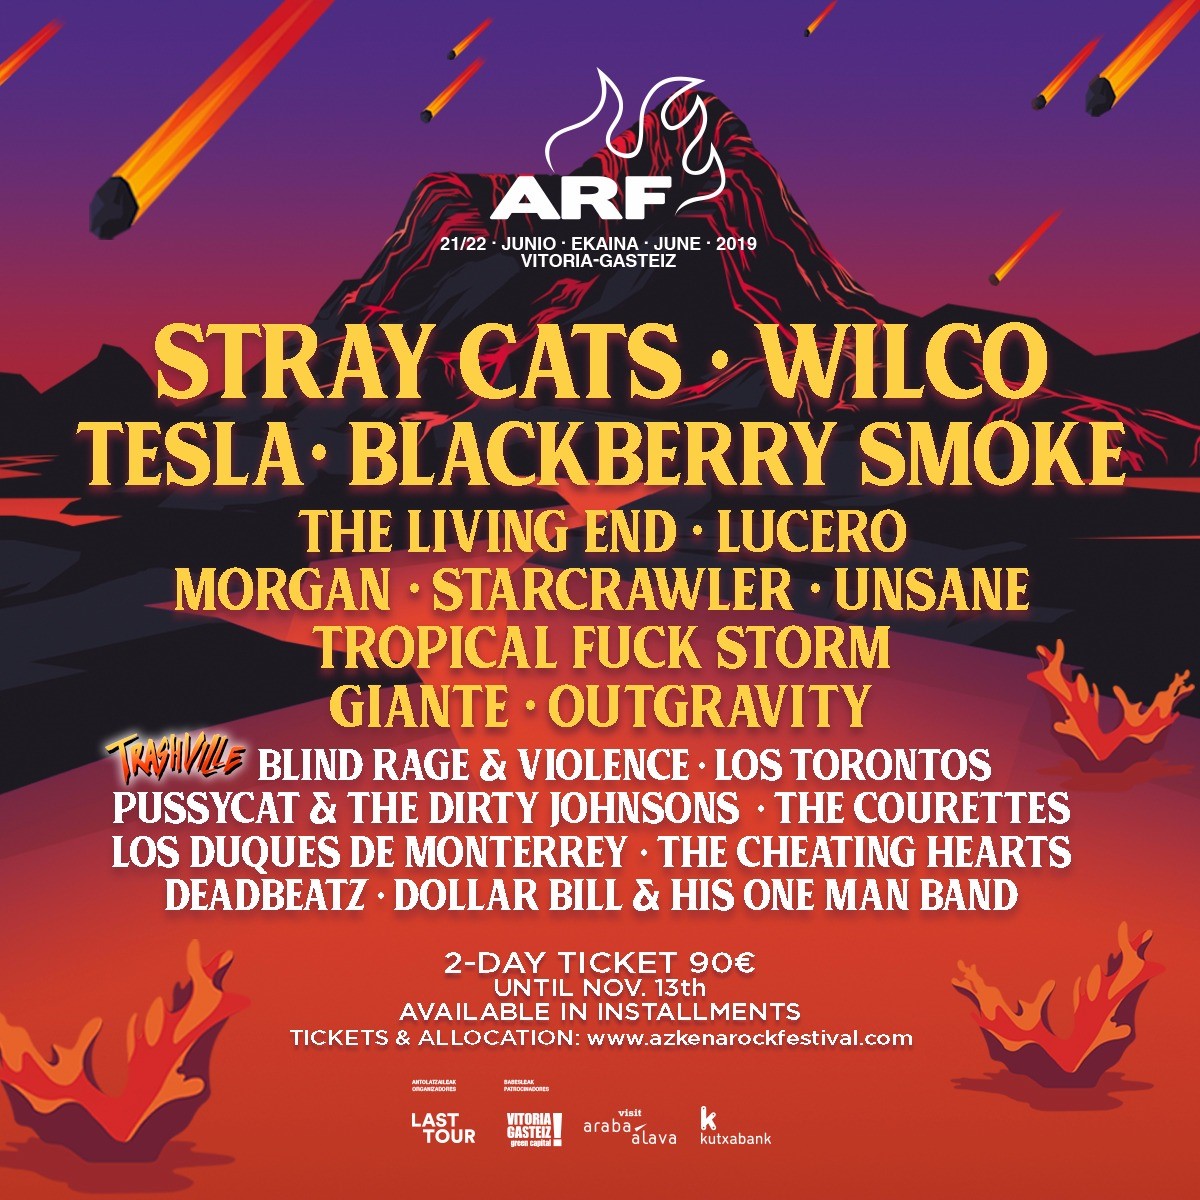 Stray Cats are headlining Azkena Rock Festival 2019! - Brian Setzer